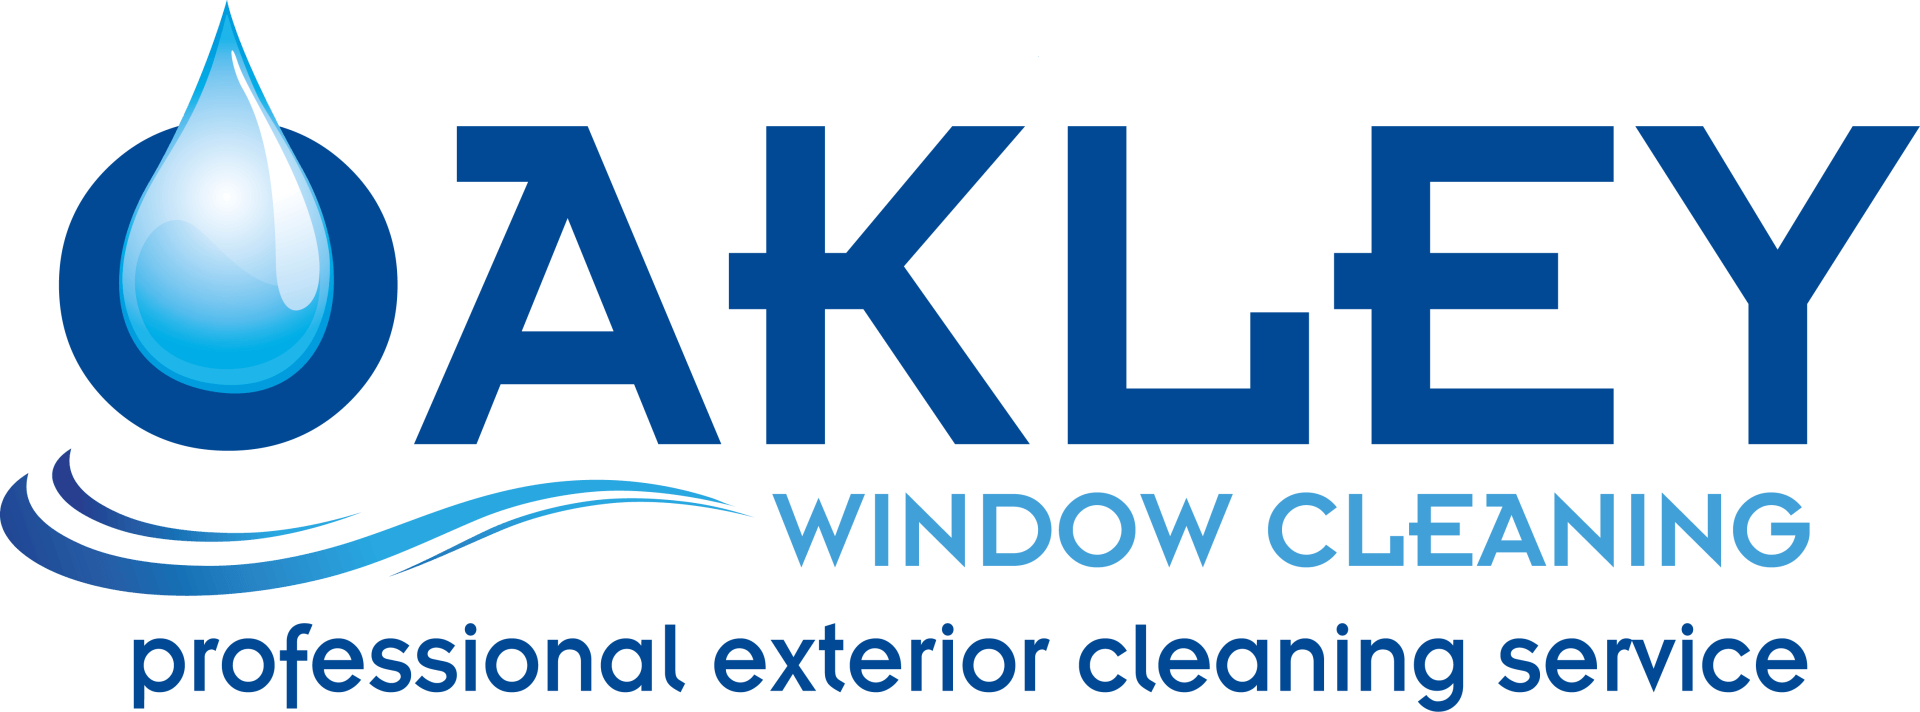 Oakley Window Cleaning Corby logo